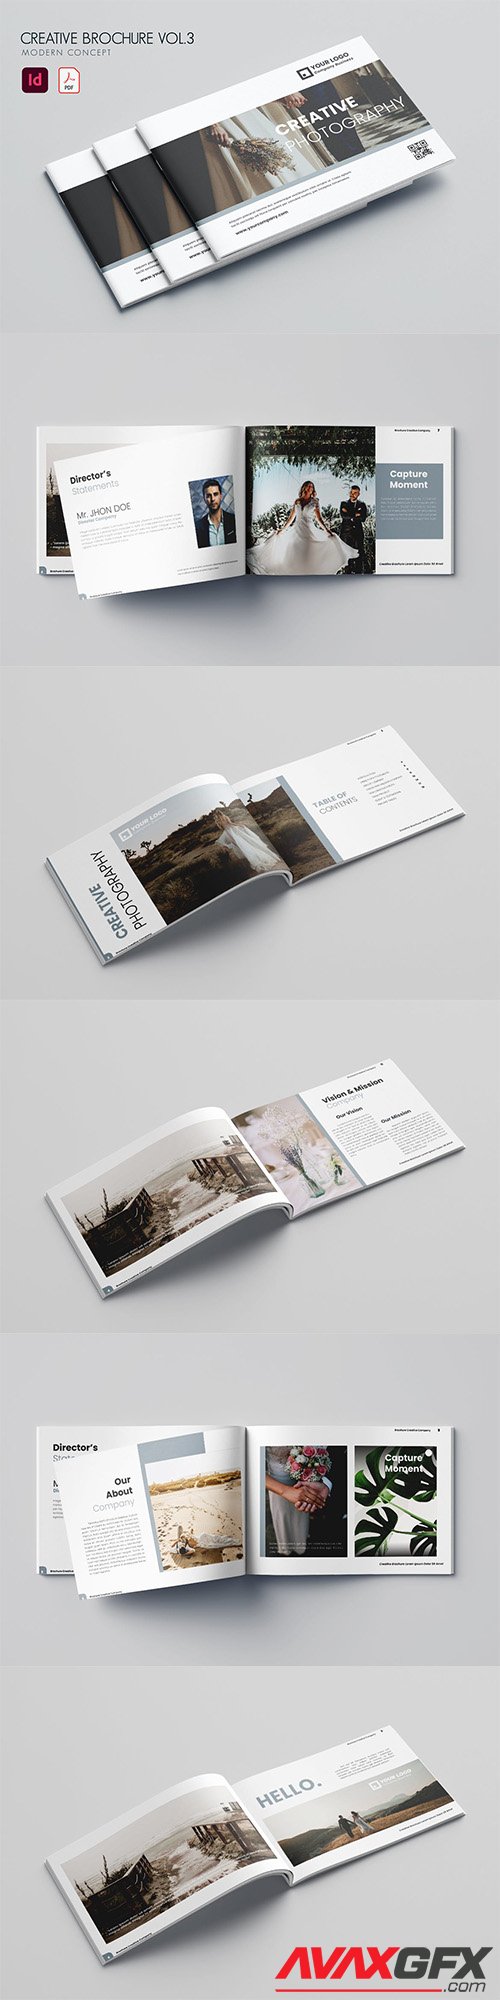 Creative Brochure Vol.3 P3TDL5A